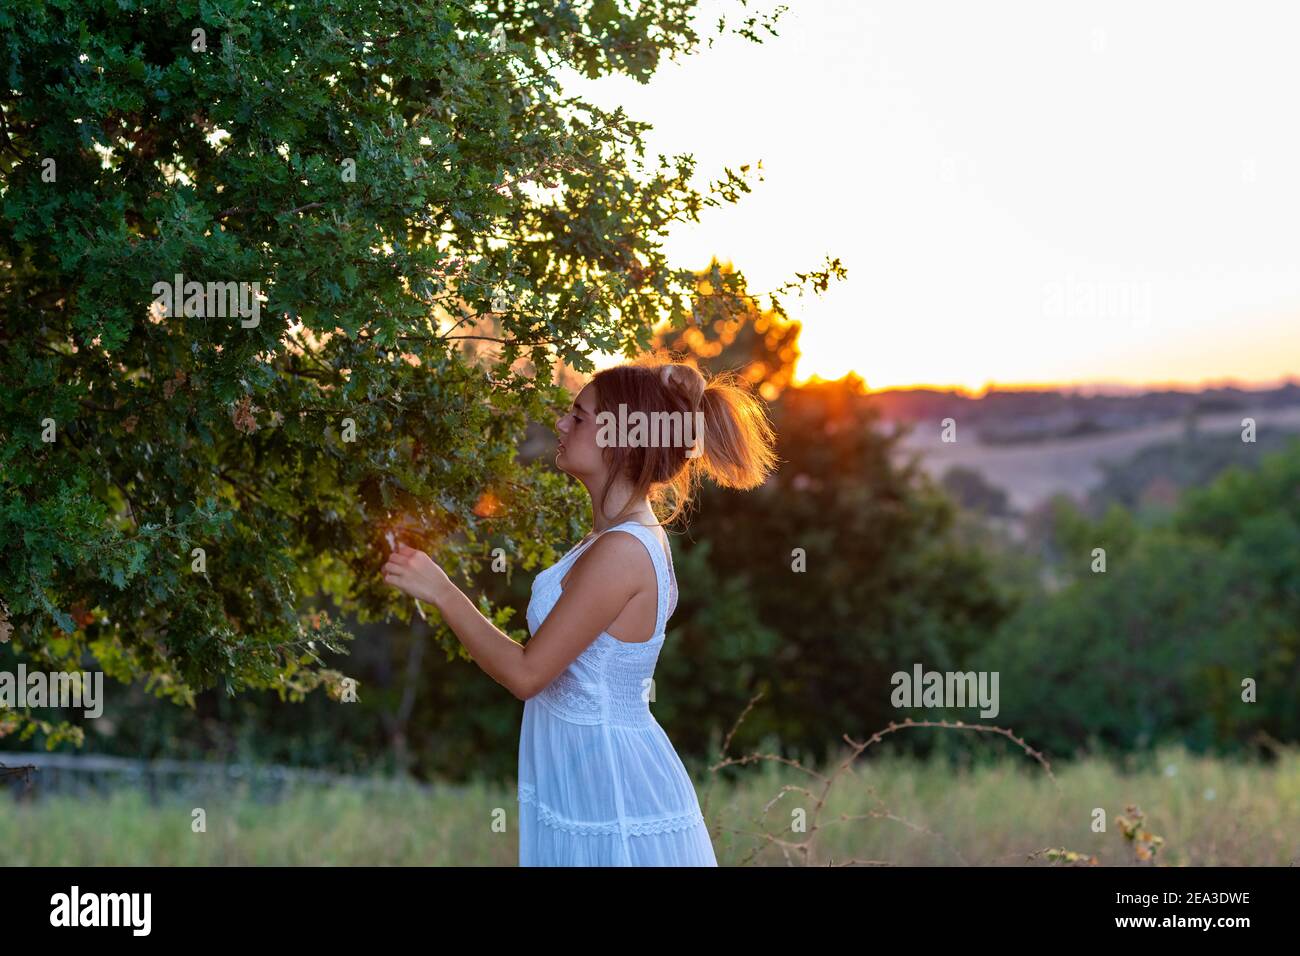 Profil d'une jeune fille en robe blanche au coucher du soleil avec des cheveux blonds attachés près de l'arbre magique Banque D'Images